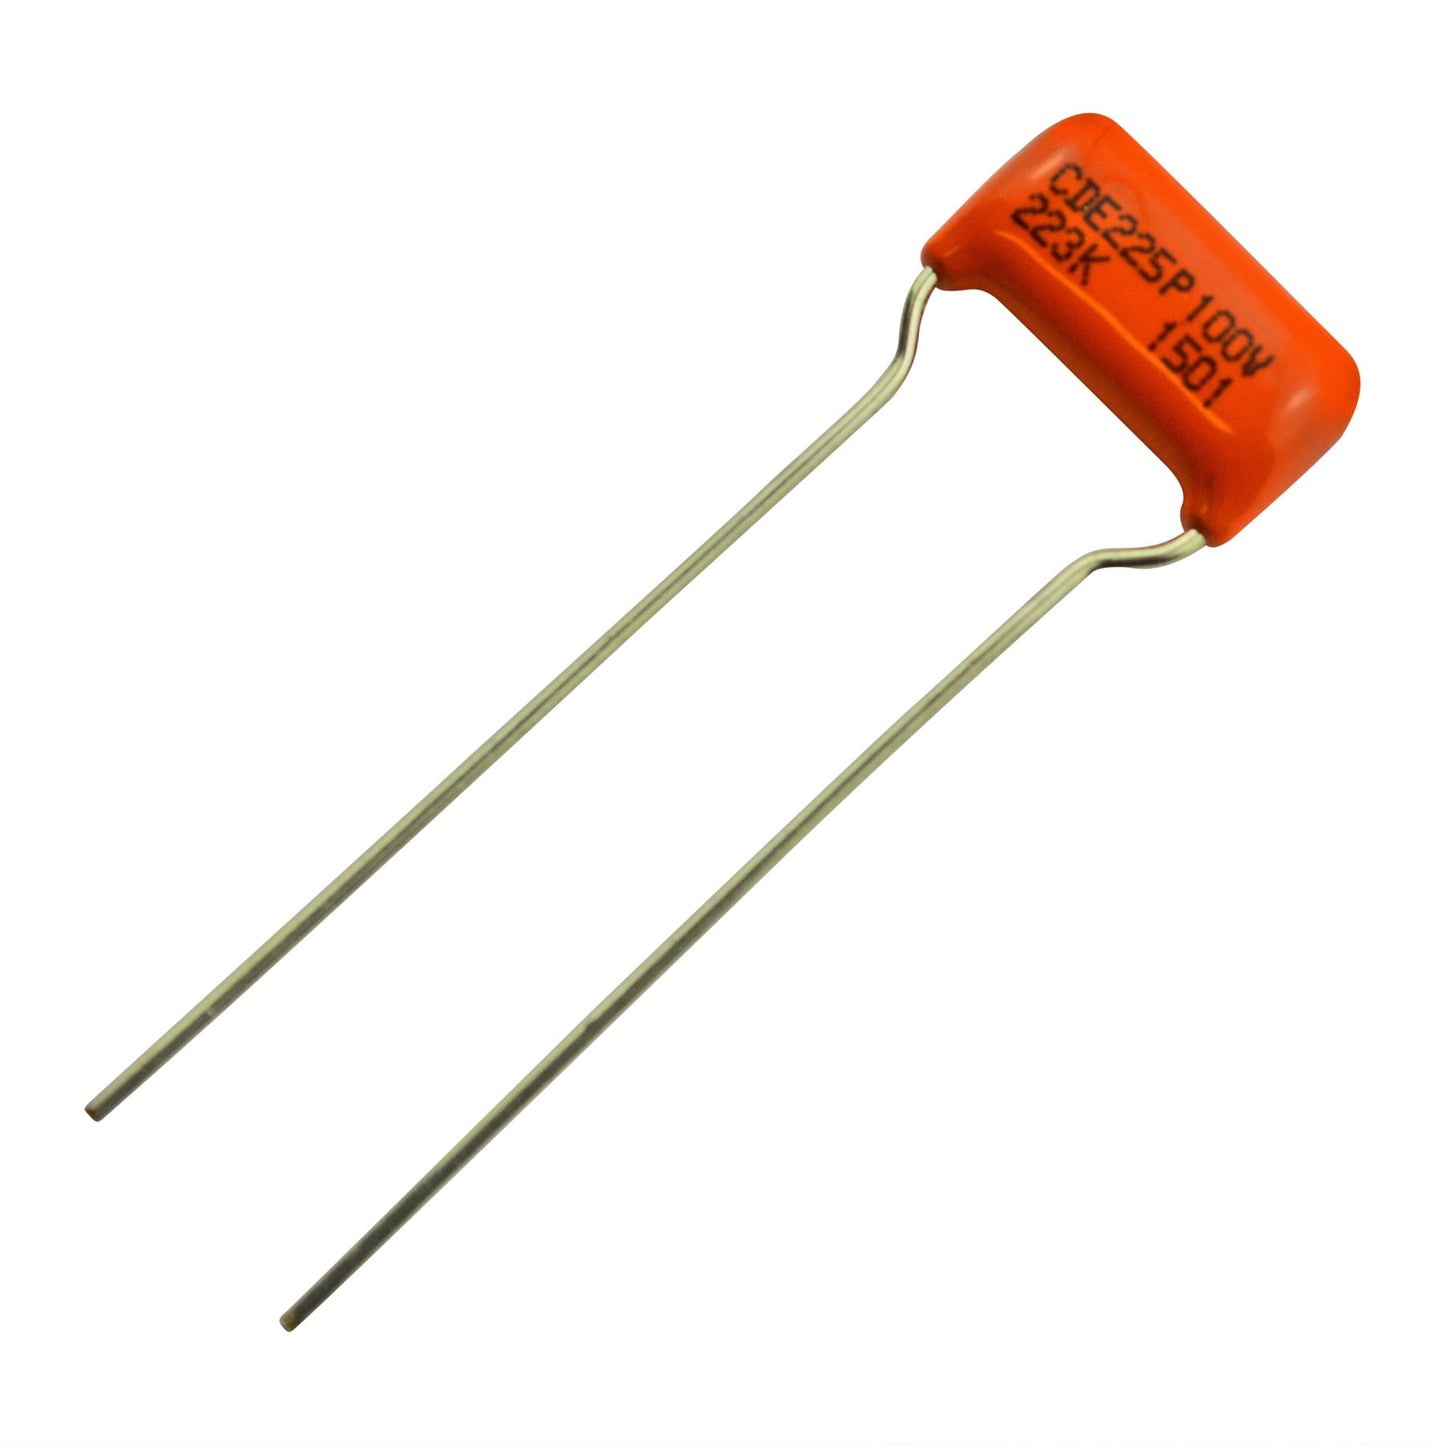 Sprague Orange Drop Capacitor - .022uF